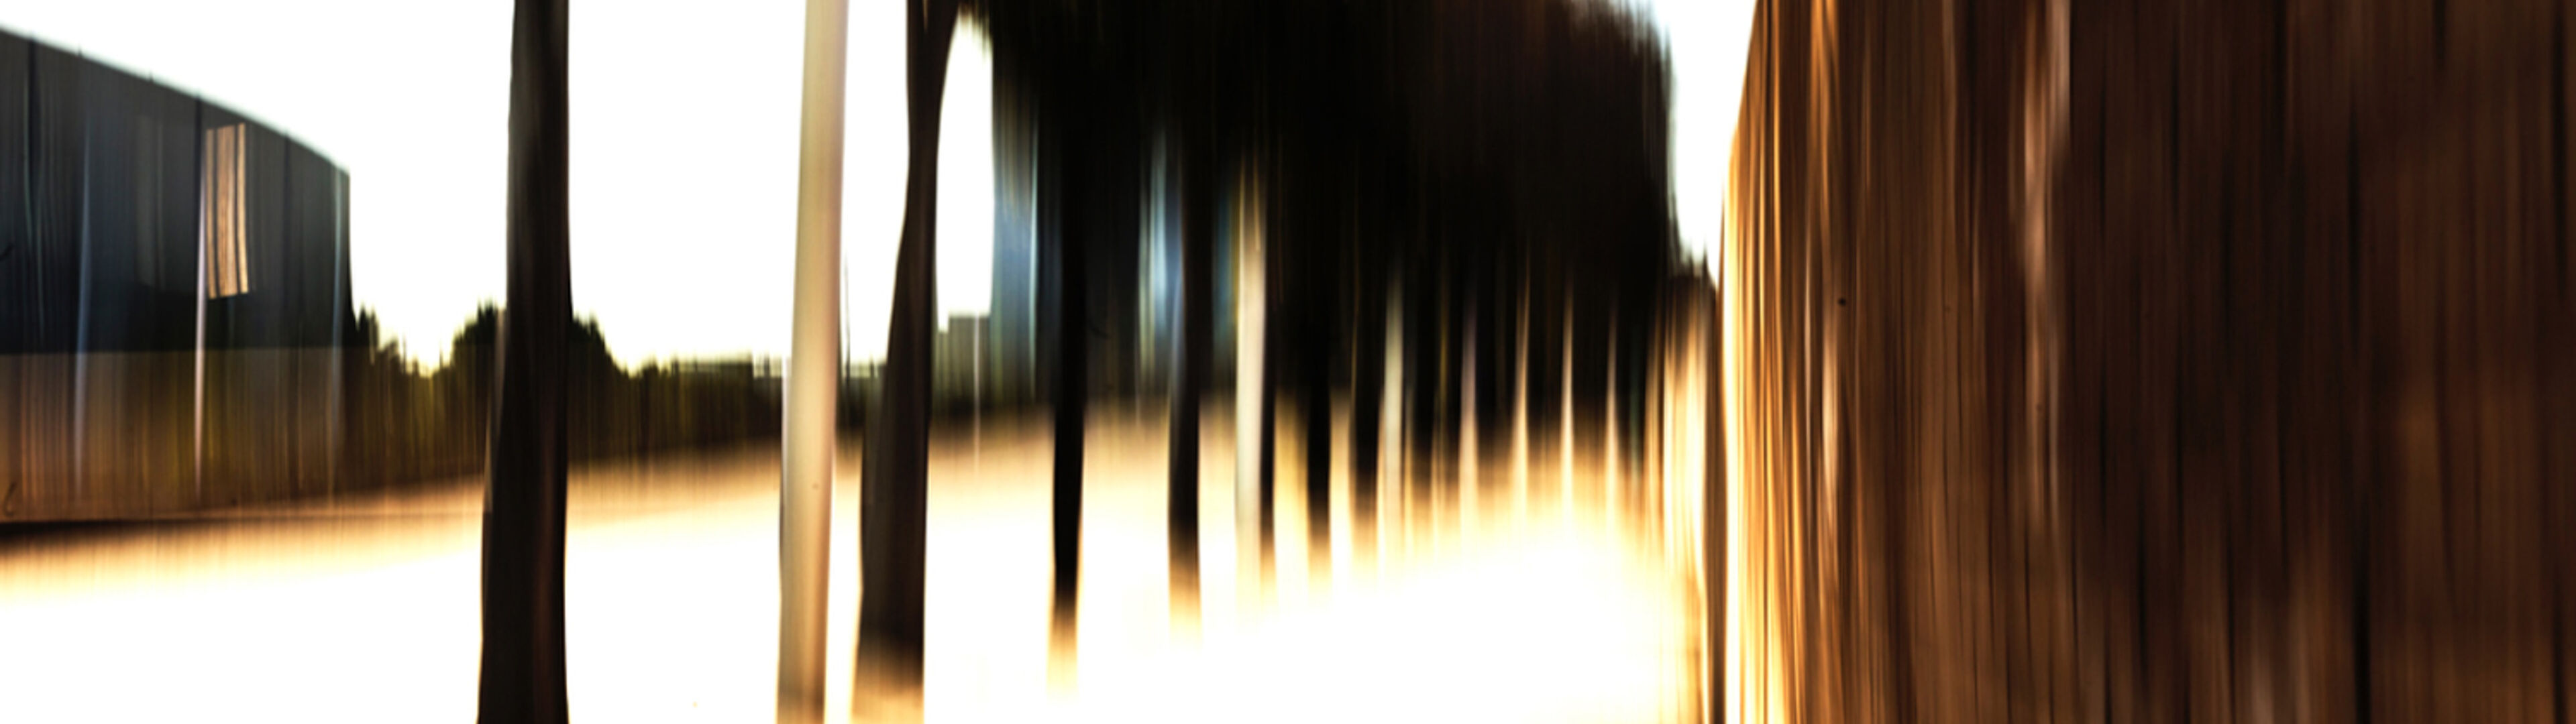 Imatge amb desenfocament de moviment que crea una impressió abstracta d'arbres i llum al llarg d'un camí.